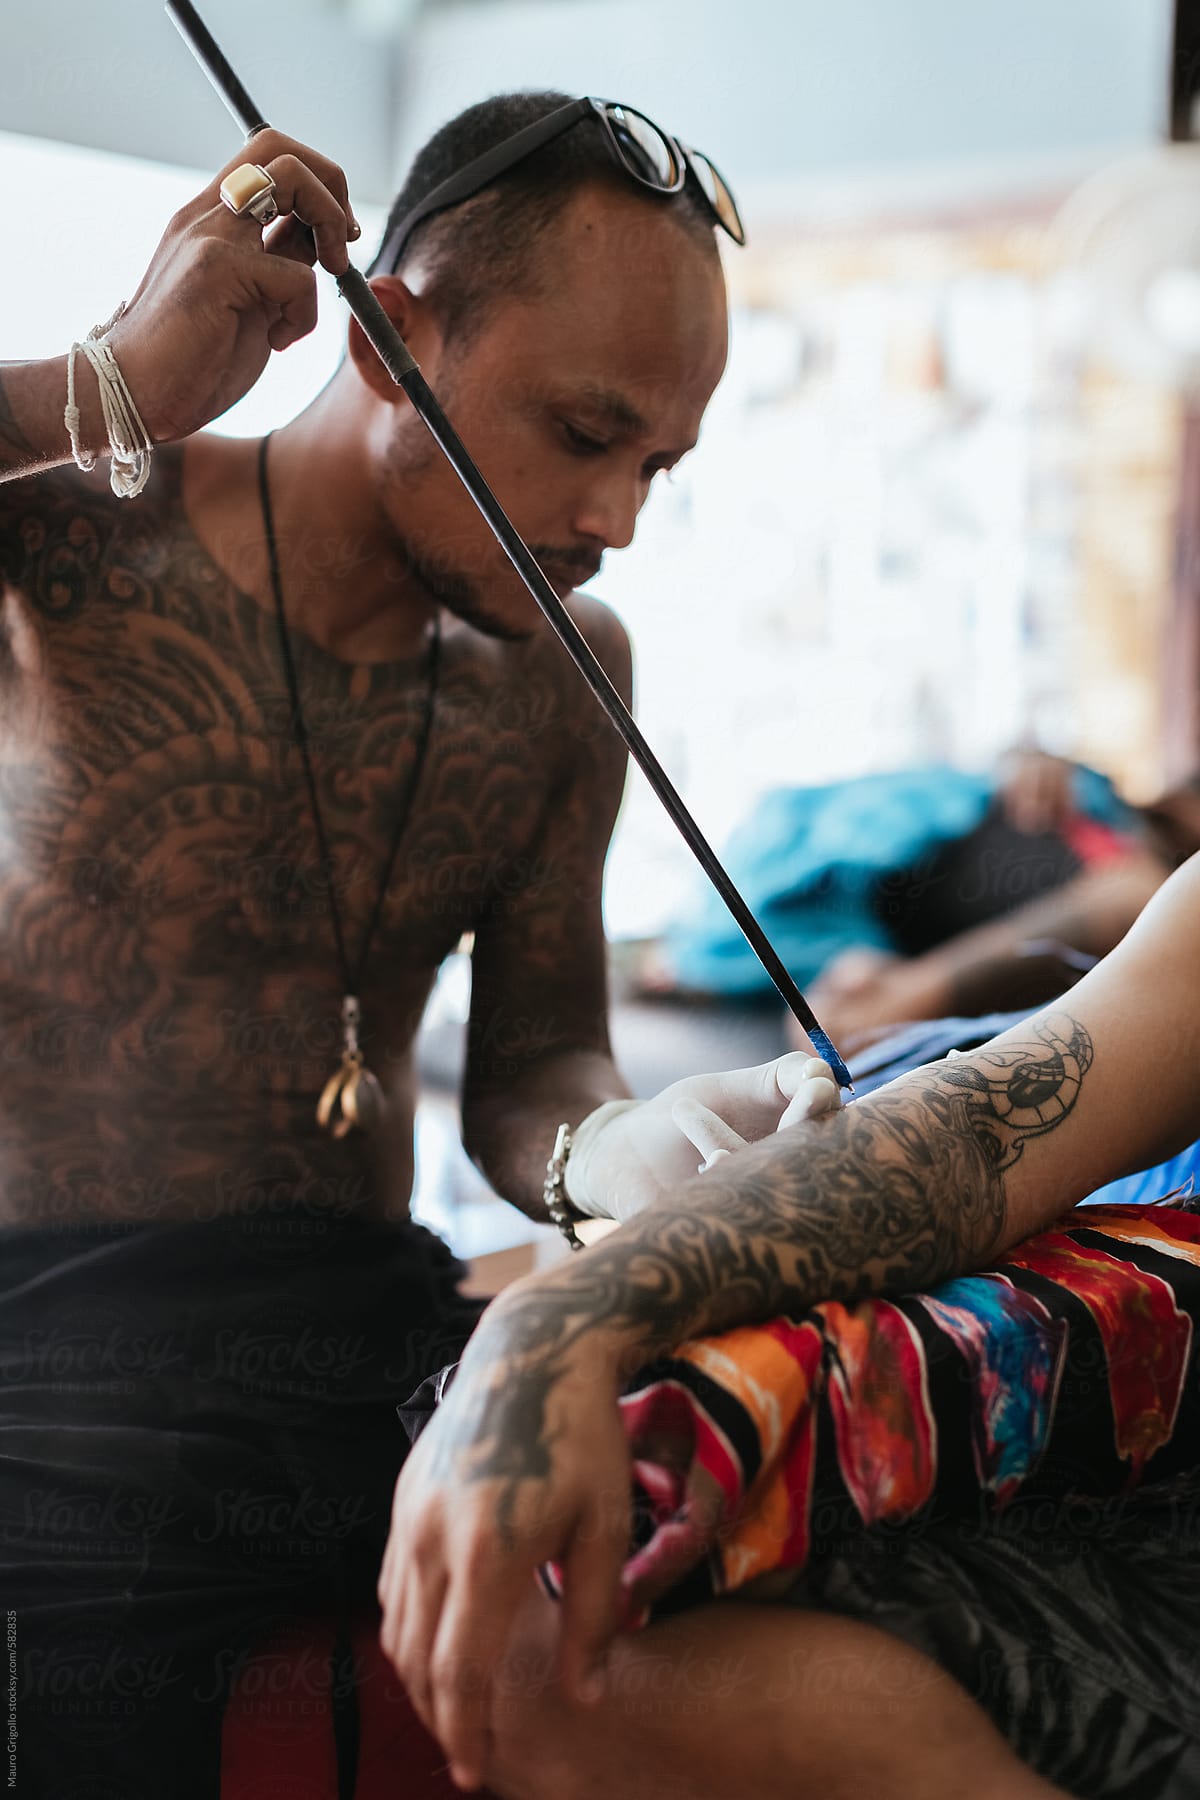 Thai tattoo artist working on a tattoo inside his studio